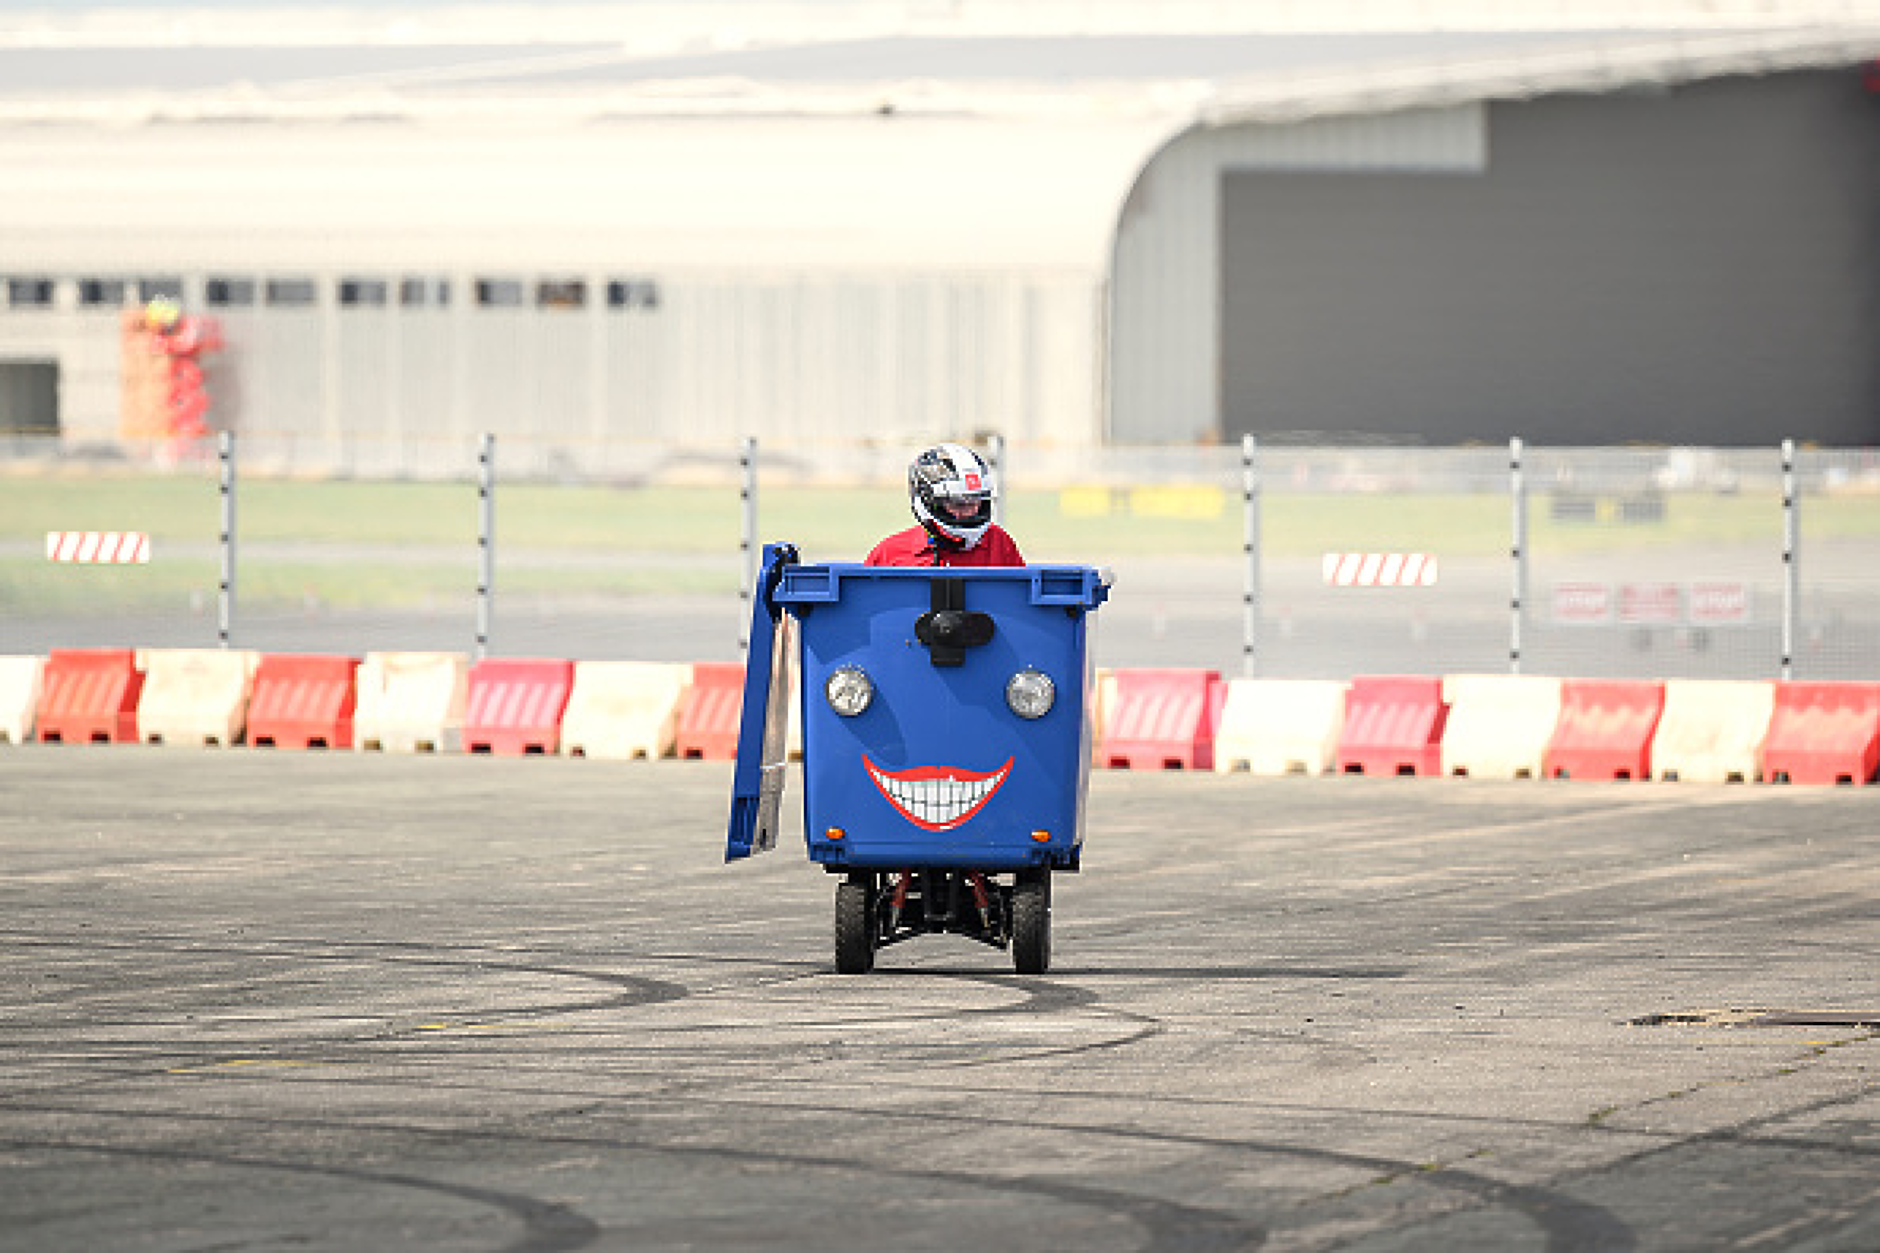 Моторизираната кофа за боклук събра вниманието на публиката в първия ден на изложението. Снимка: Getty Images